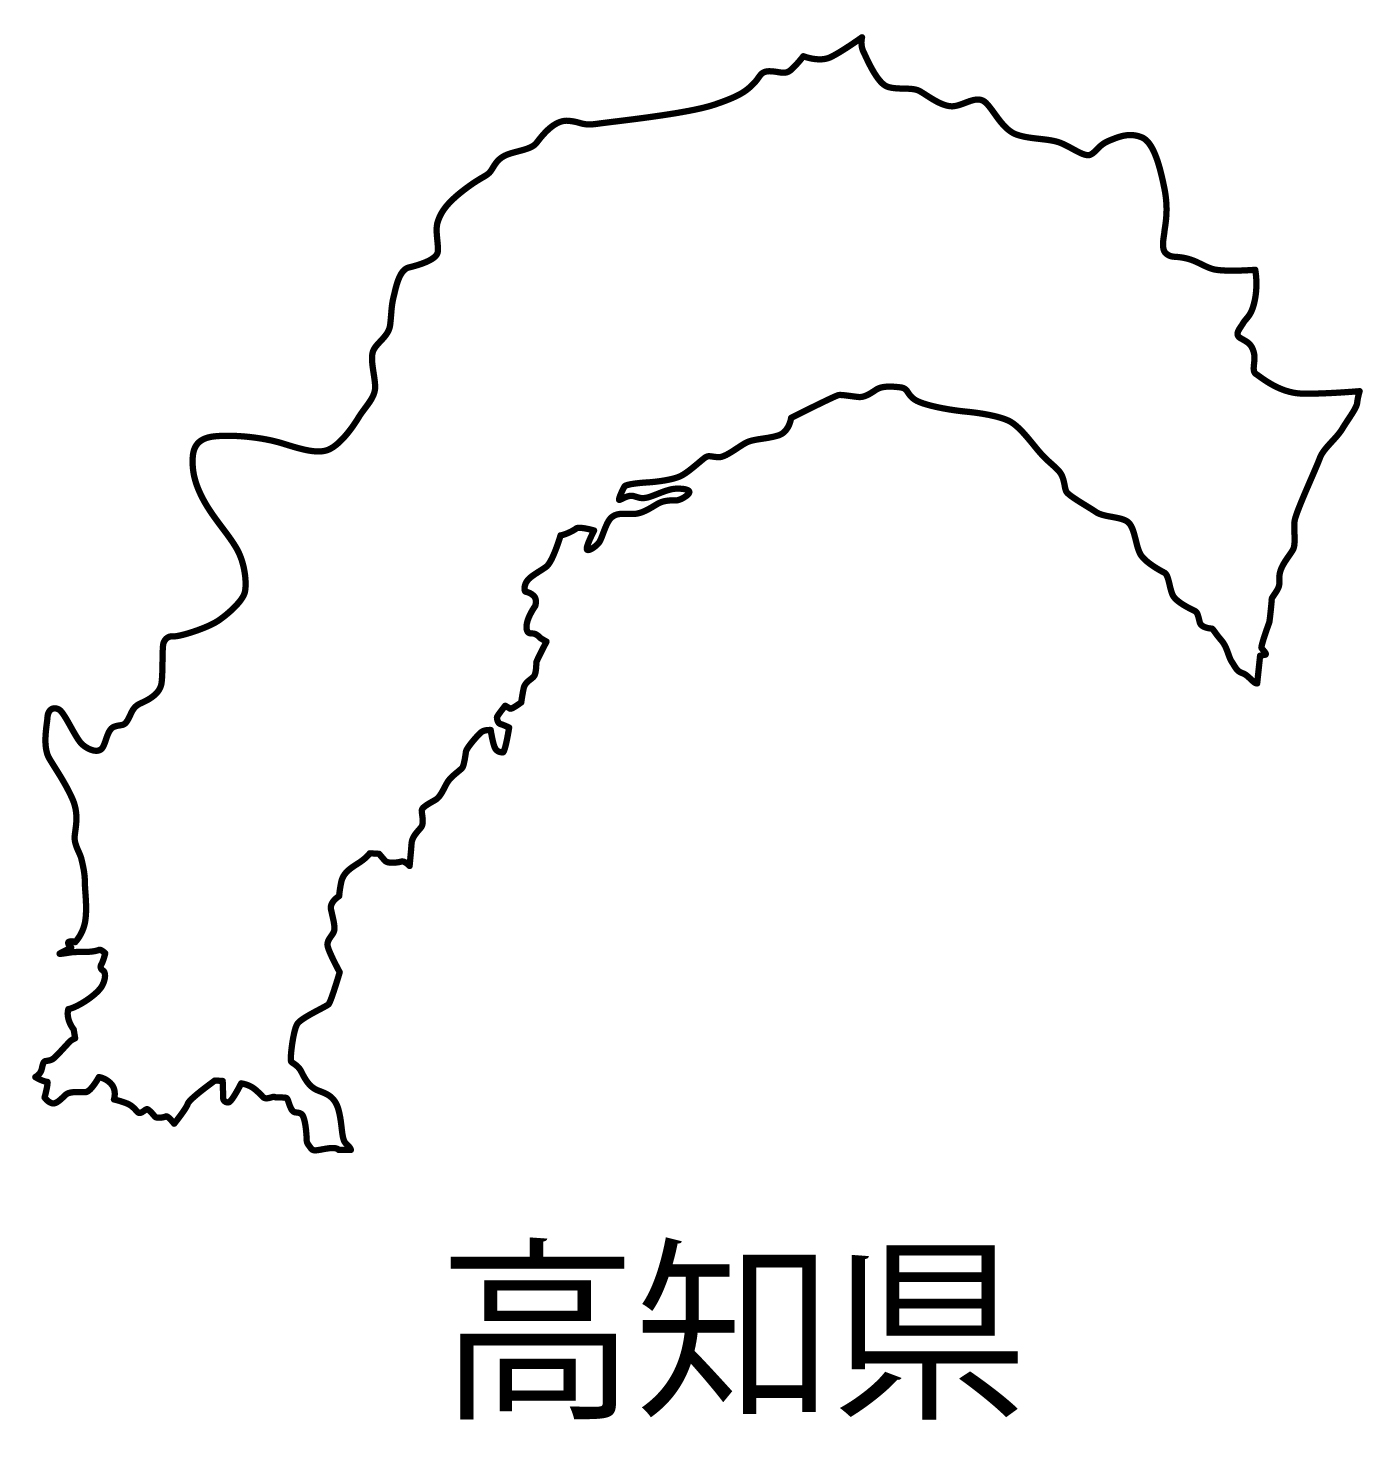 高知県の地図イラスト フリー素材 を無料ダウンロード